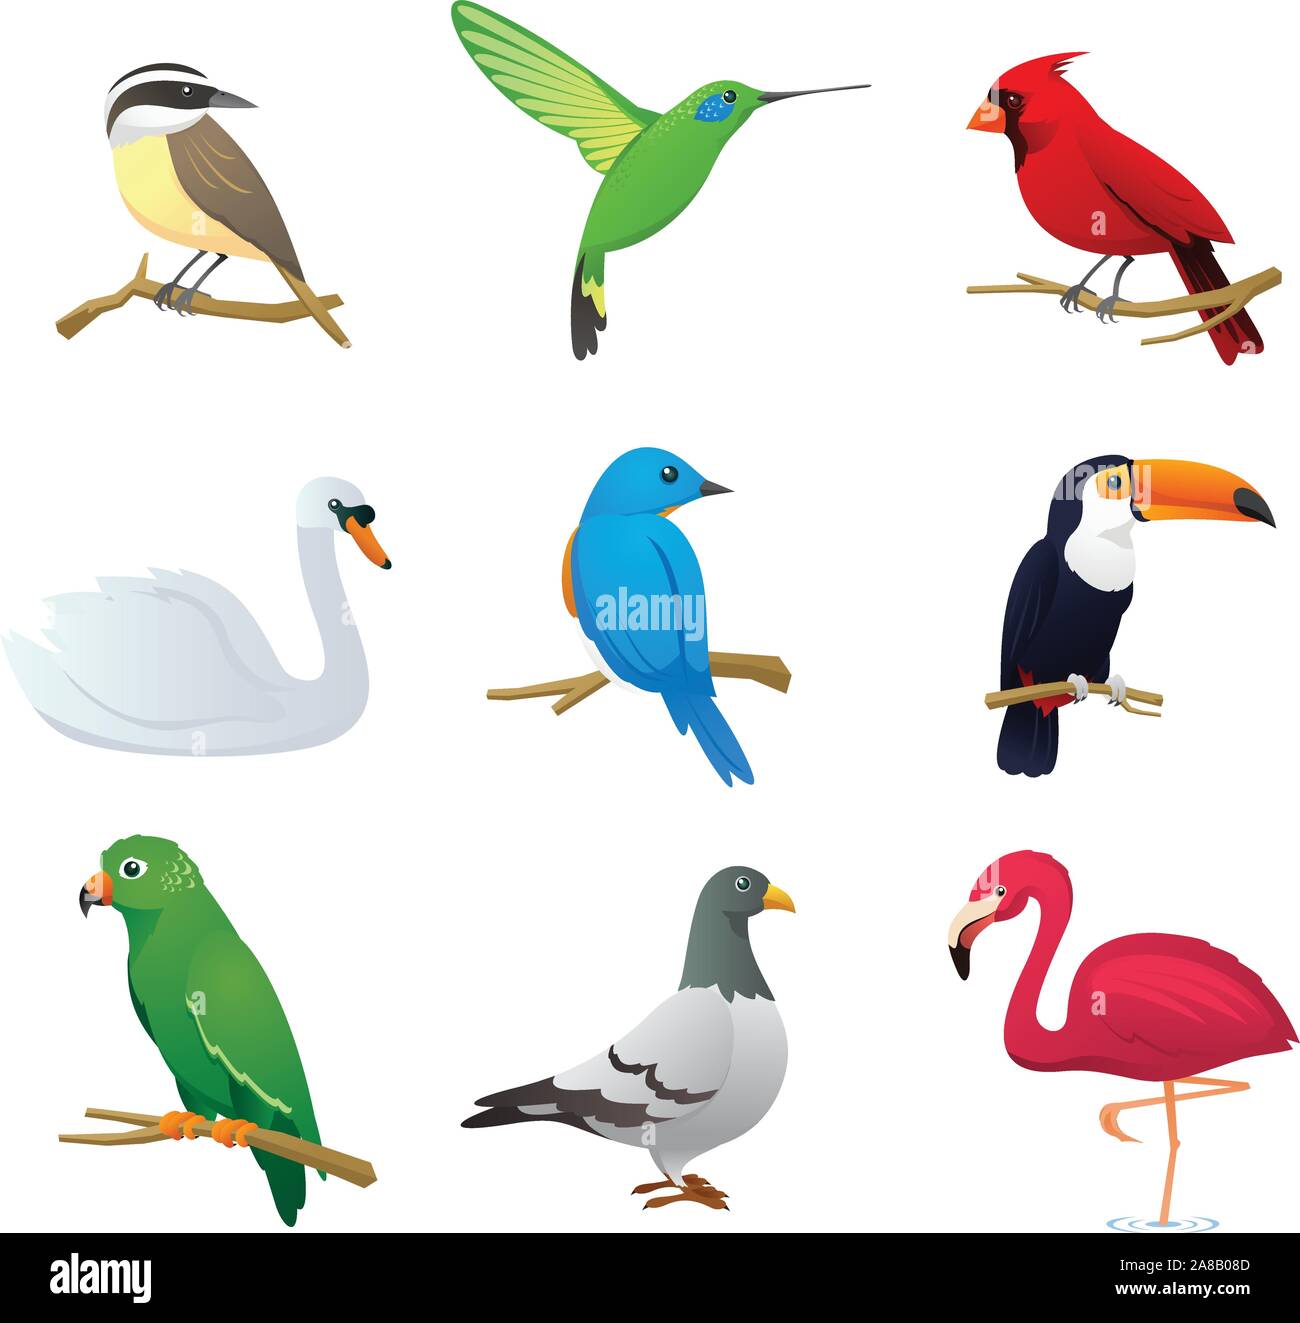 Realistische Arten Vogelsammlung, mit neun verschiedenen Vogelarten Vektor-Illustration. Stock Vektor